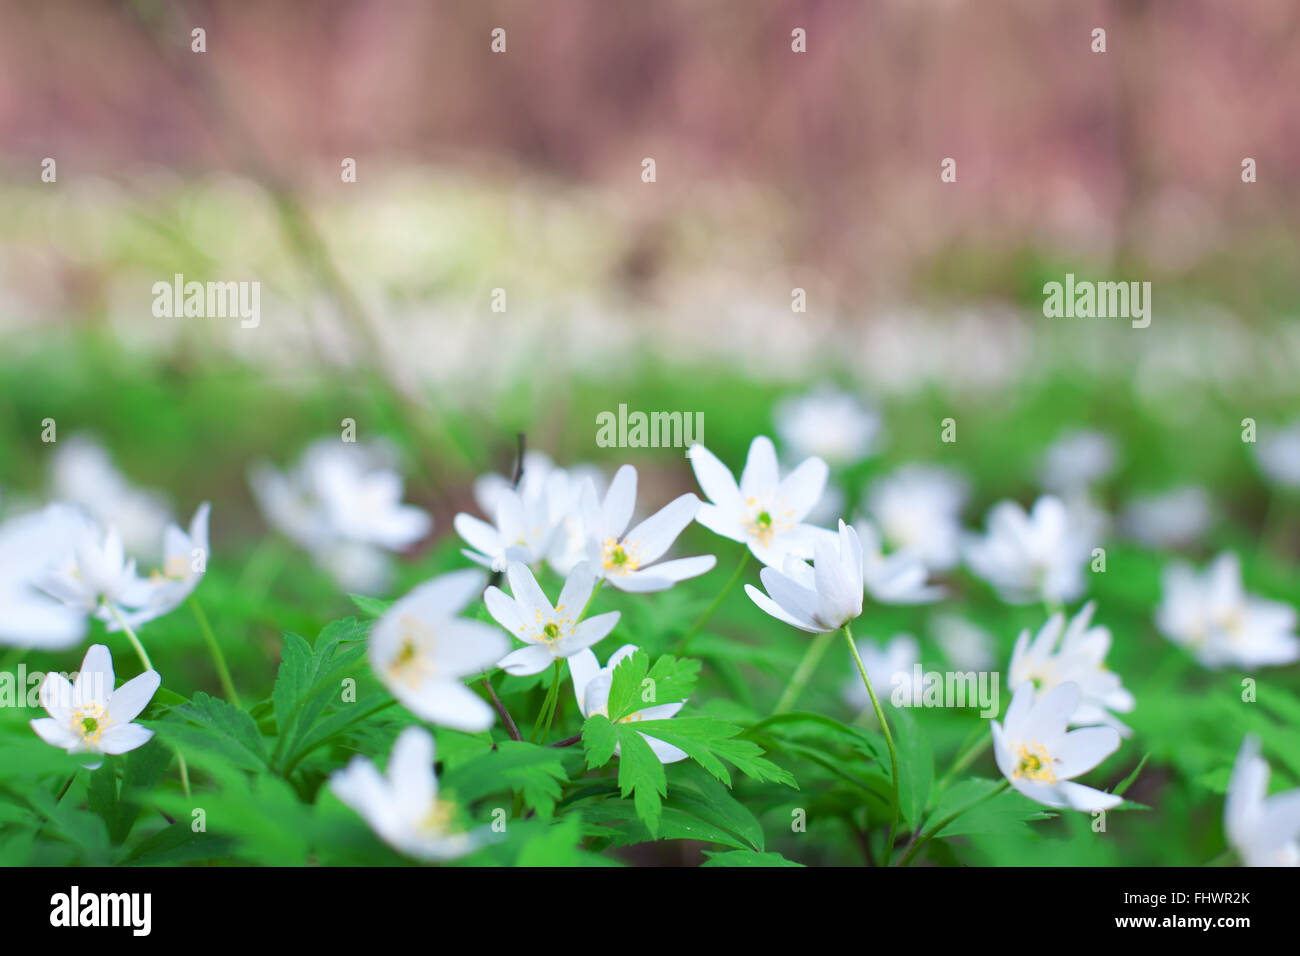 Anémone blanche fleurs en croissance à l'état sauvage dans une forêt au printemps. Image douce fleur stock shot sur aperture ouvert avec b Banque D'Images